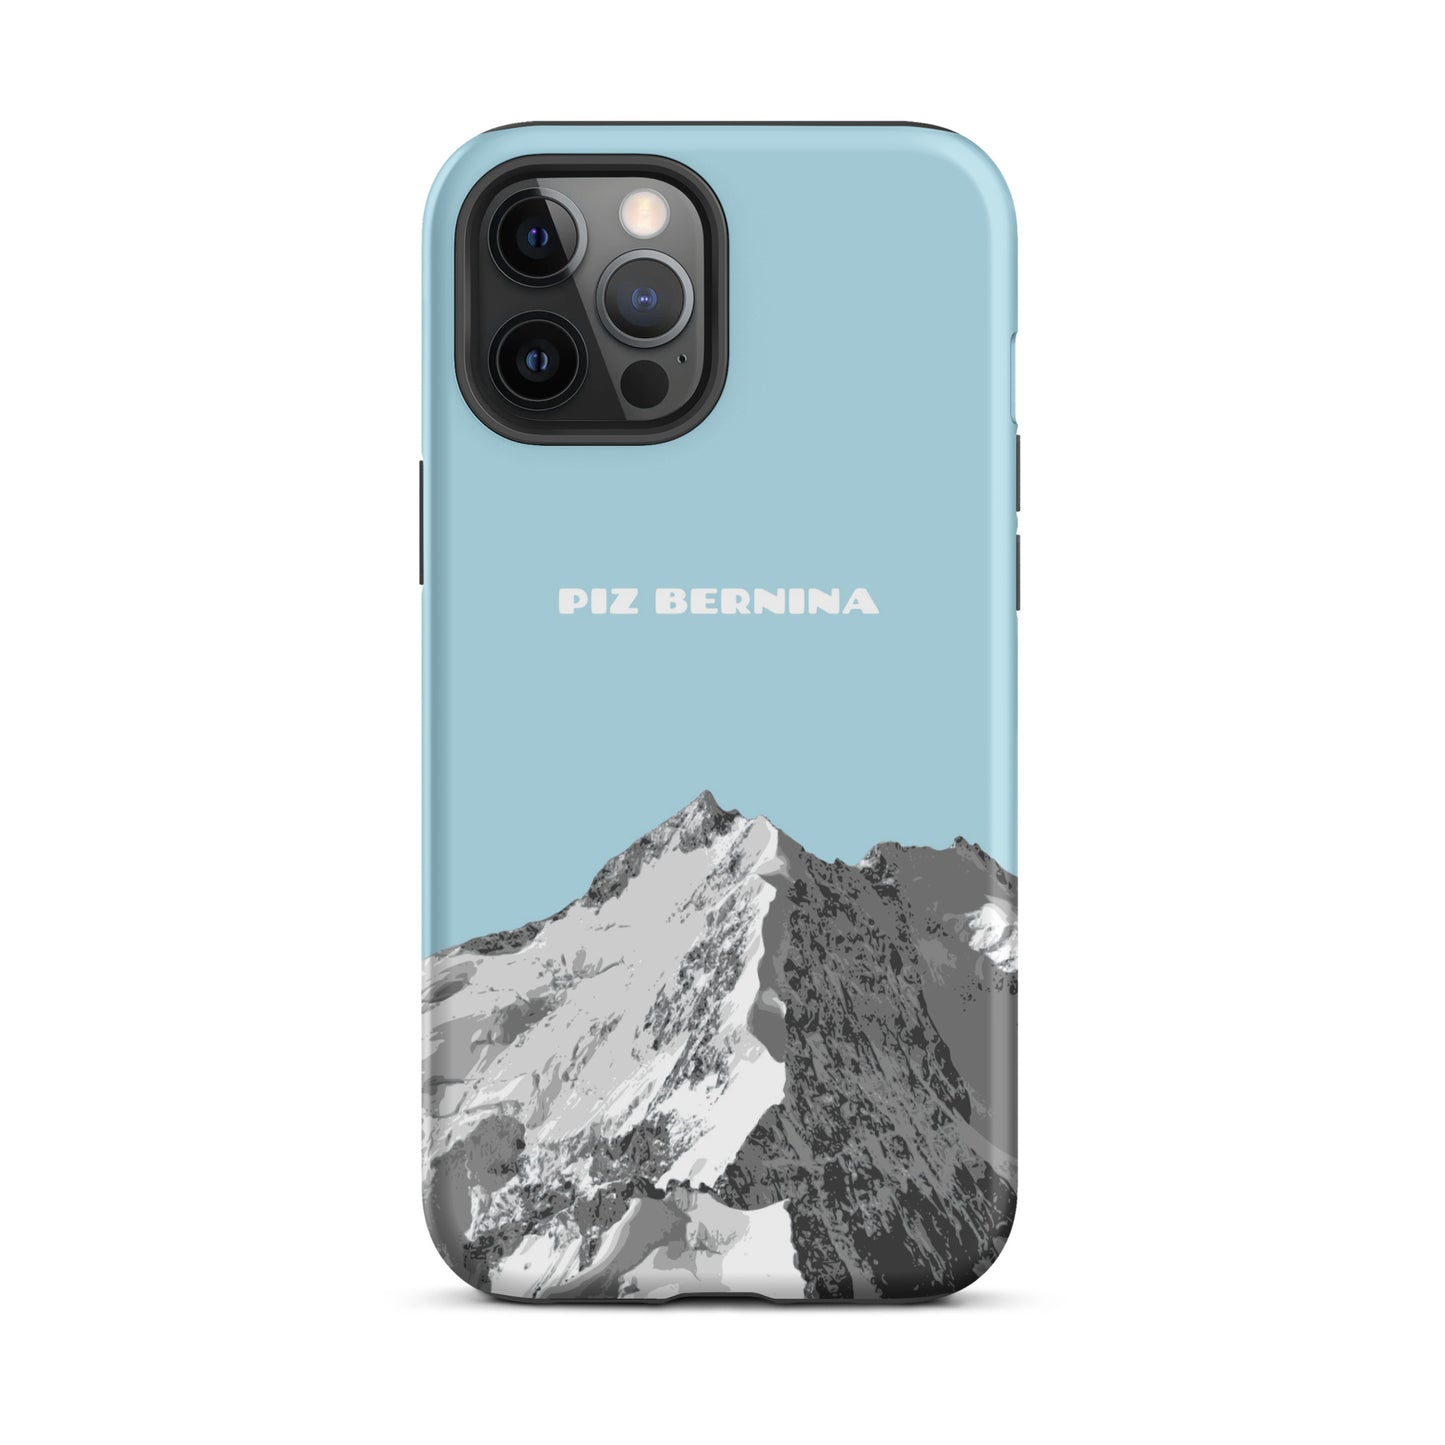 Hülle für das iPhone 12 Pro Max von Apple in der Farbe Hellblau, dass den Piz Bernina in Graubünden zeigt.